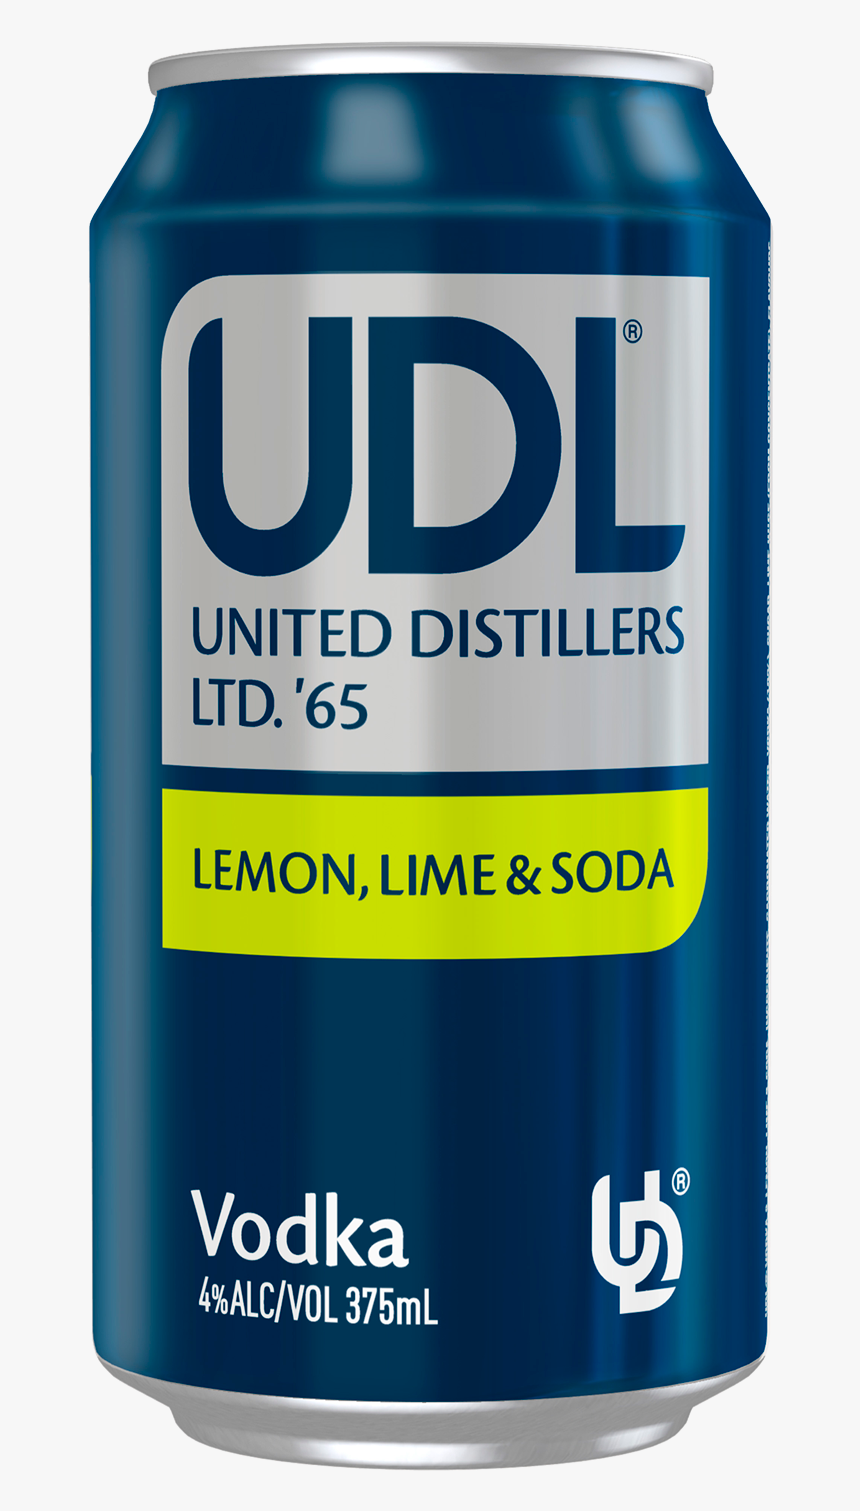 Udl Vodka Lemon Lime & Soda Cans 375ml, HD Png Download, Free Download